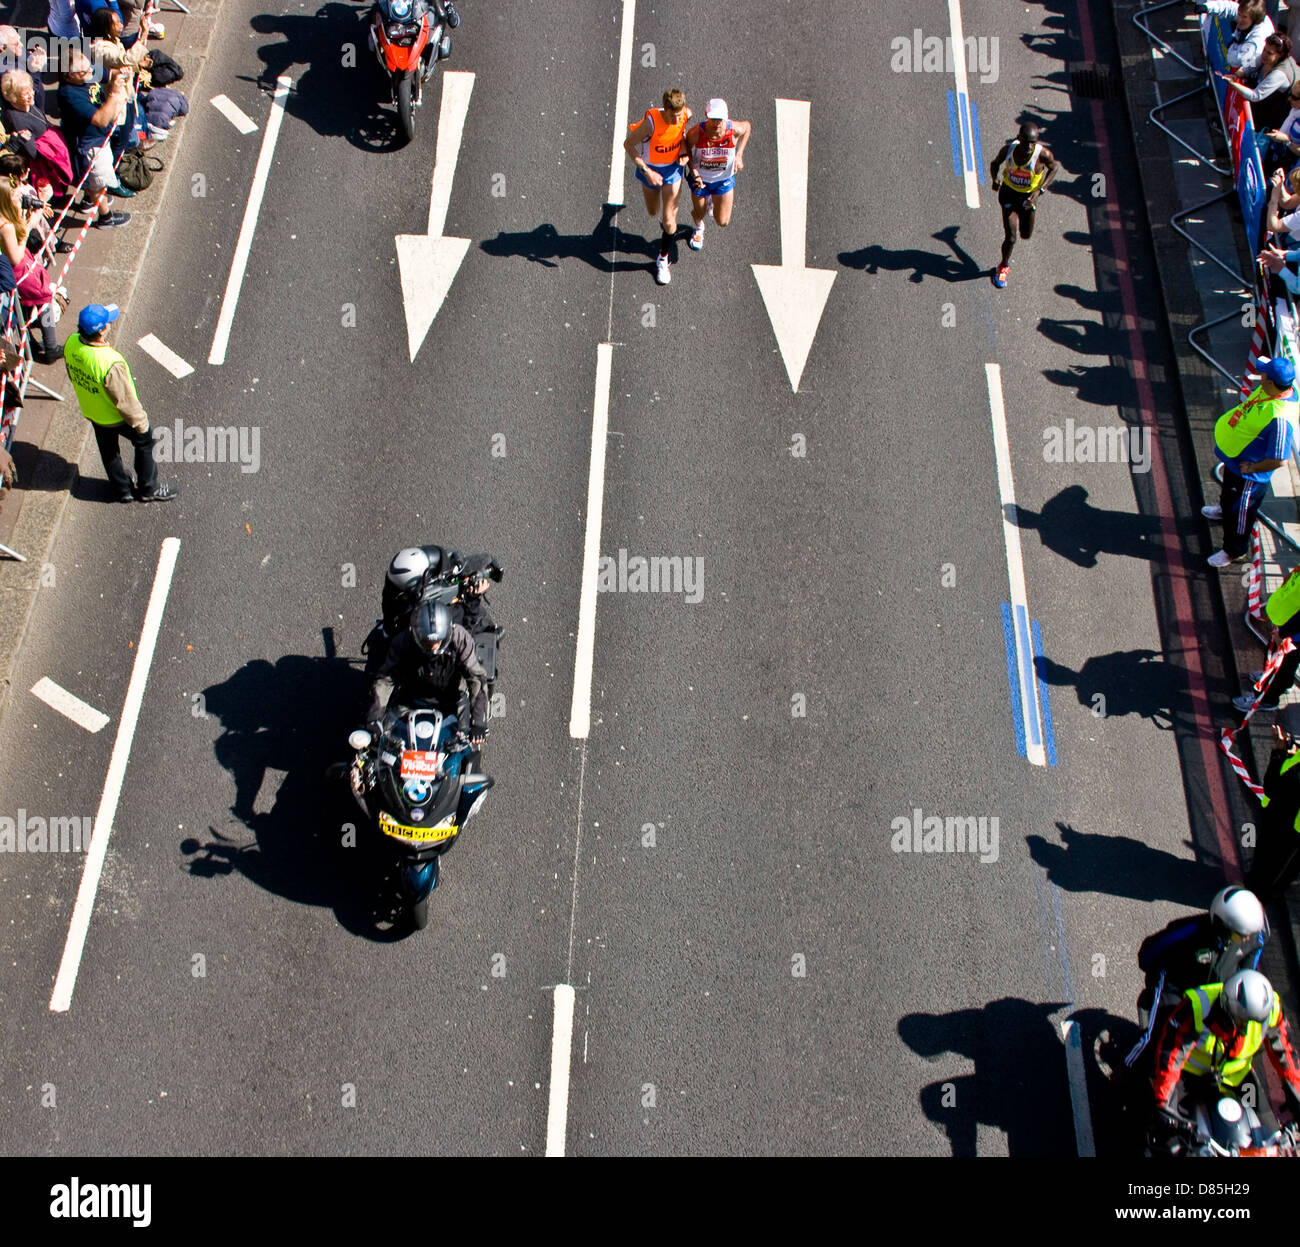 Les déficients visuels et coureur guide voyant sur Victoria Embankment 2013 Marathon de Londres Angleterre Europe Banque D'Images